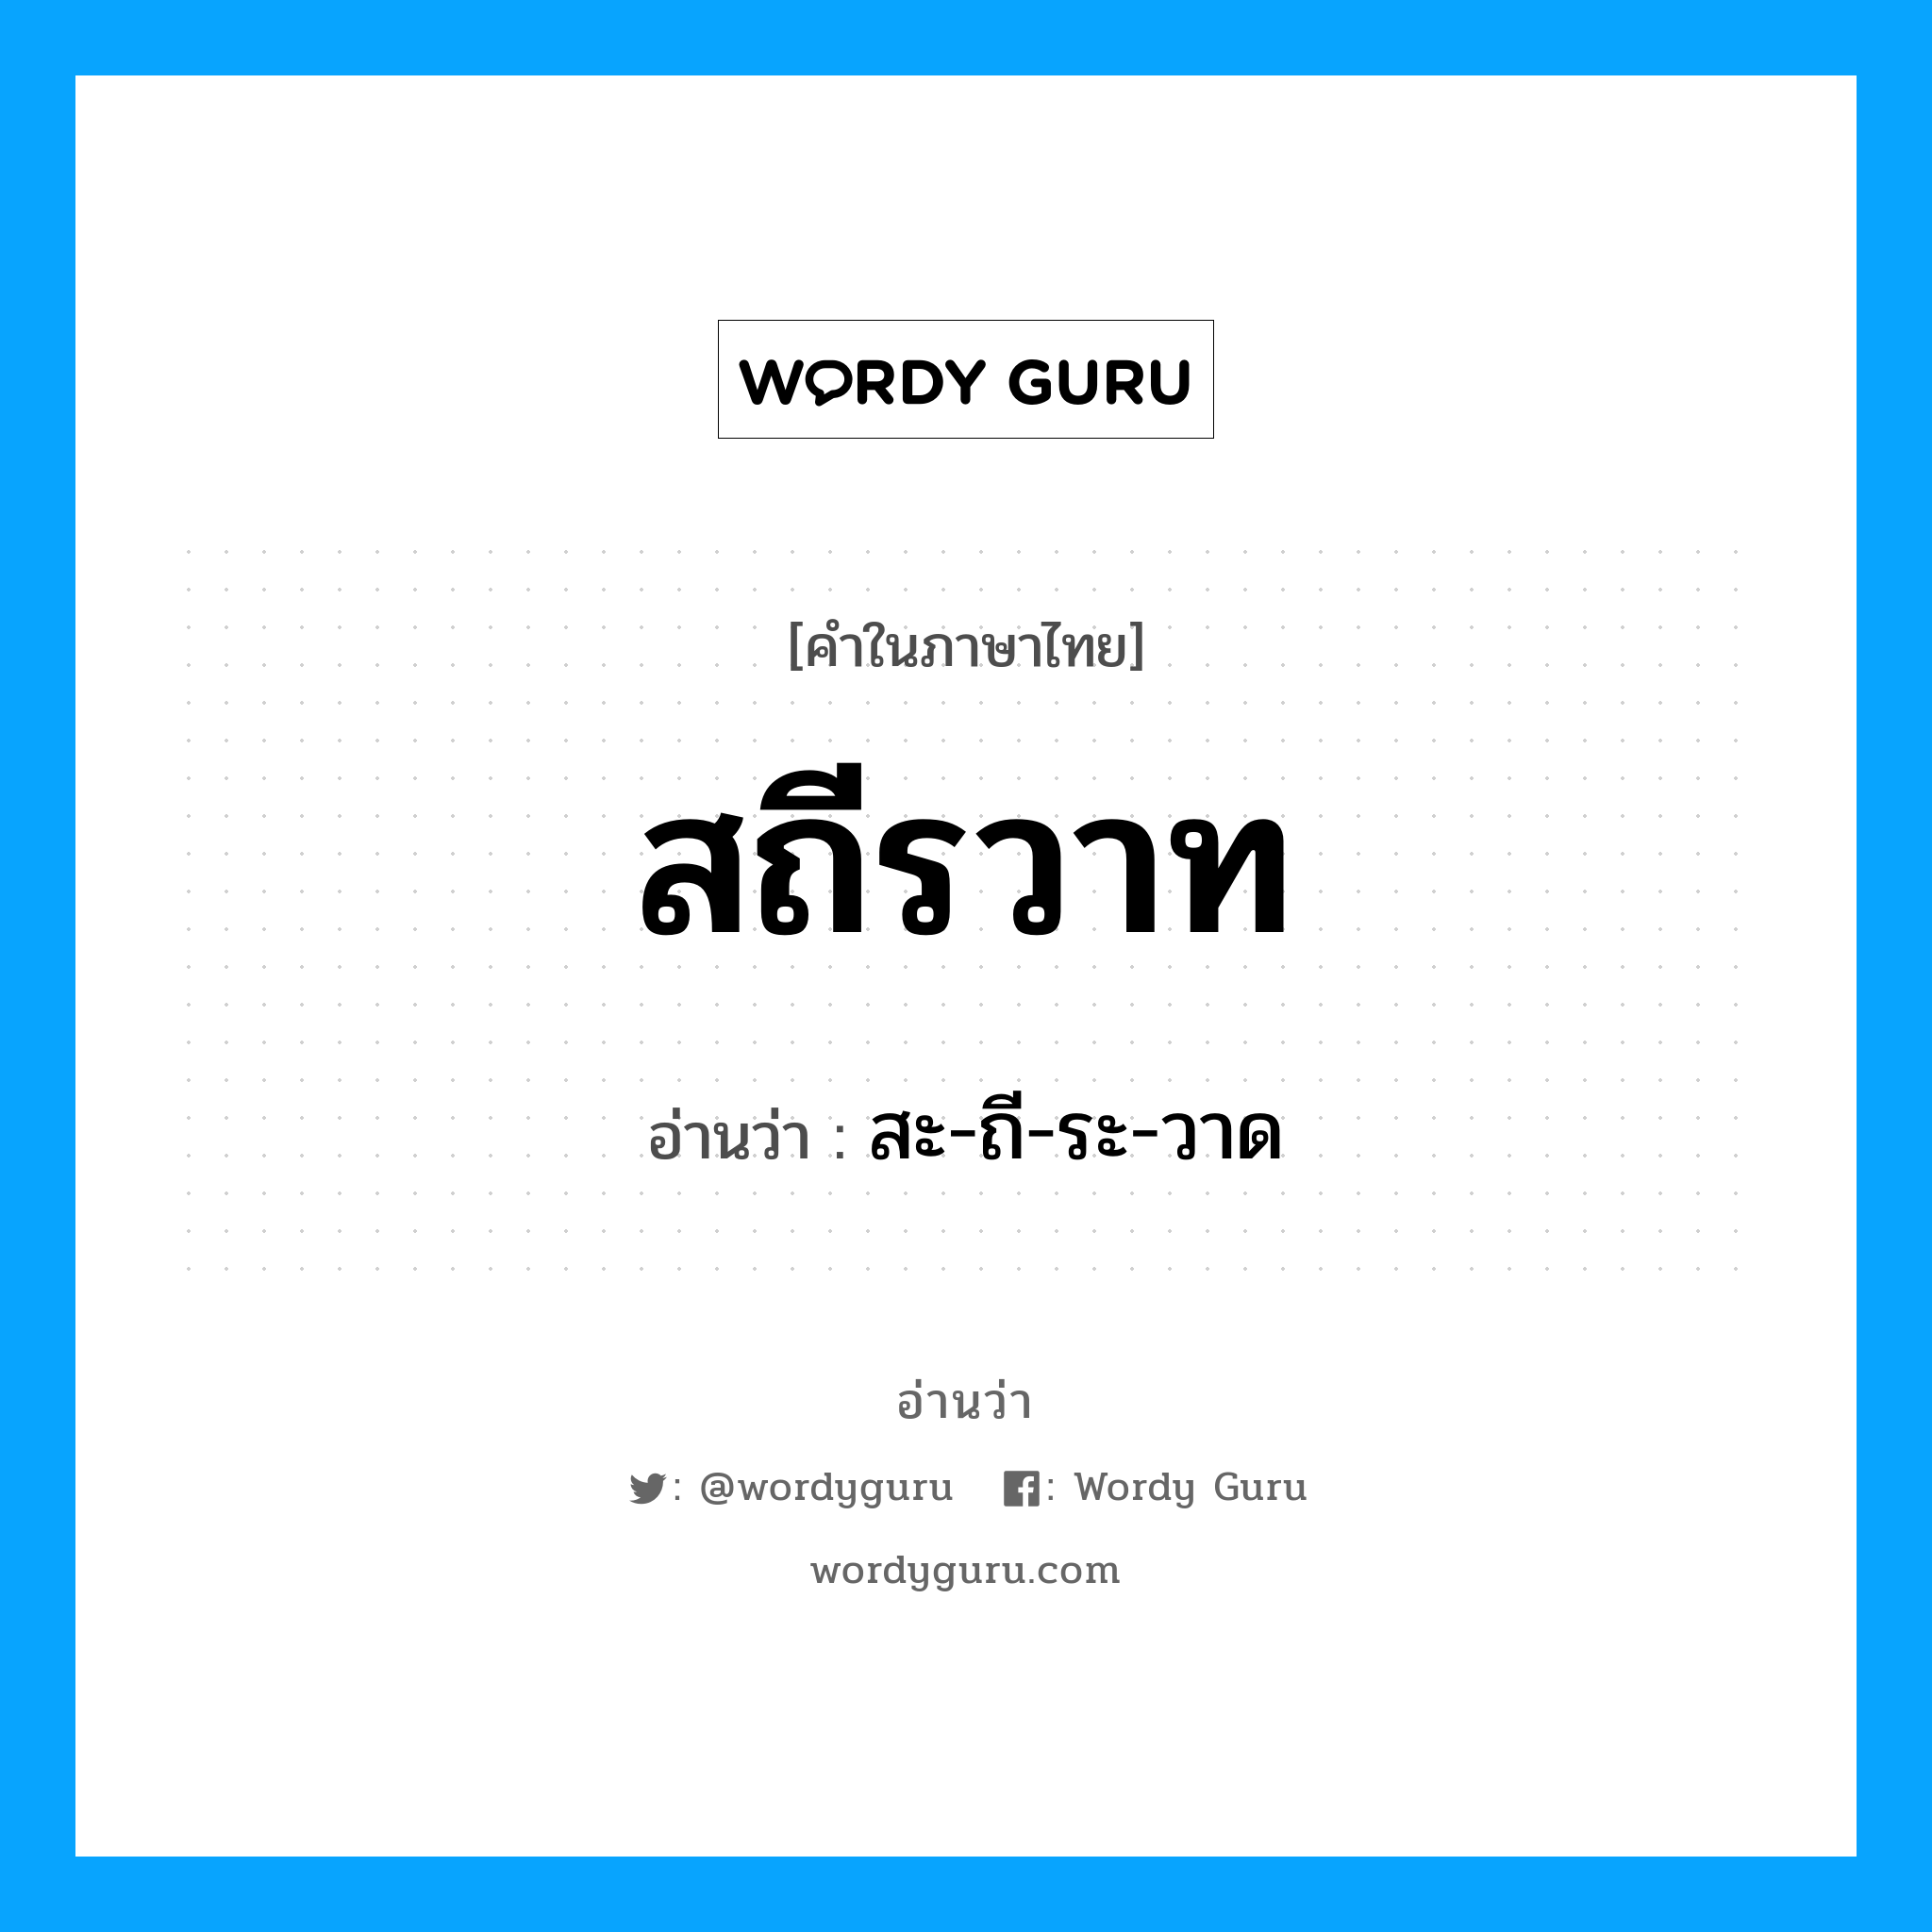 สะ-ถี-ระ-วาด เป็นคำอ่านของคำไหน?, คำในภาษาไทย สะ-ถี-ระ-วาด อ่านว่า สถีรวาท